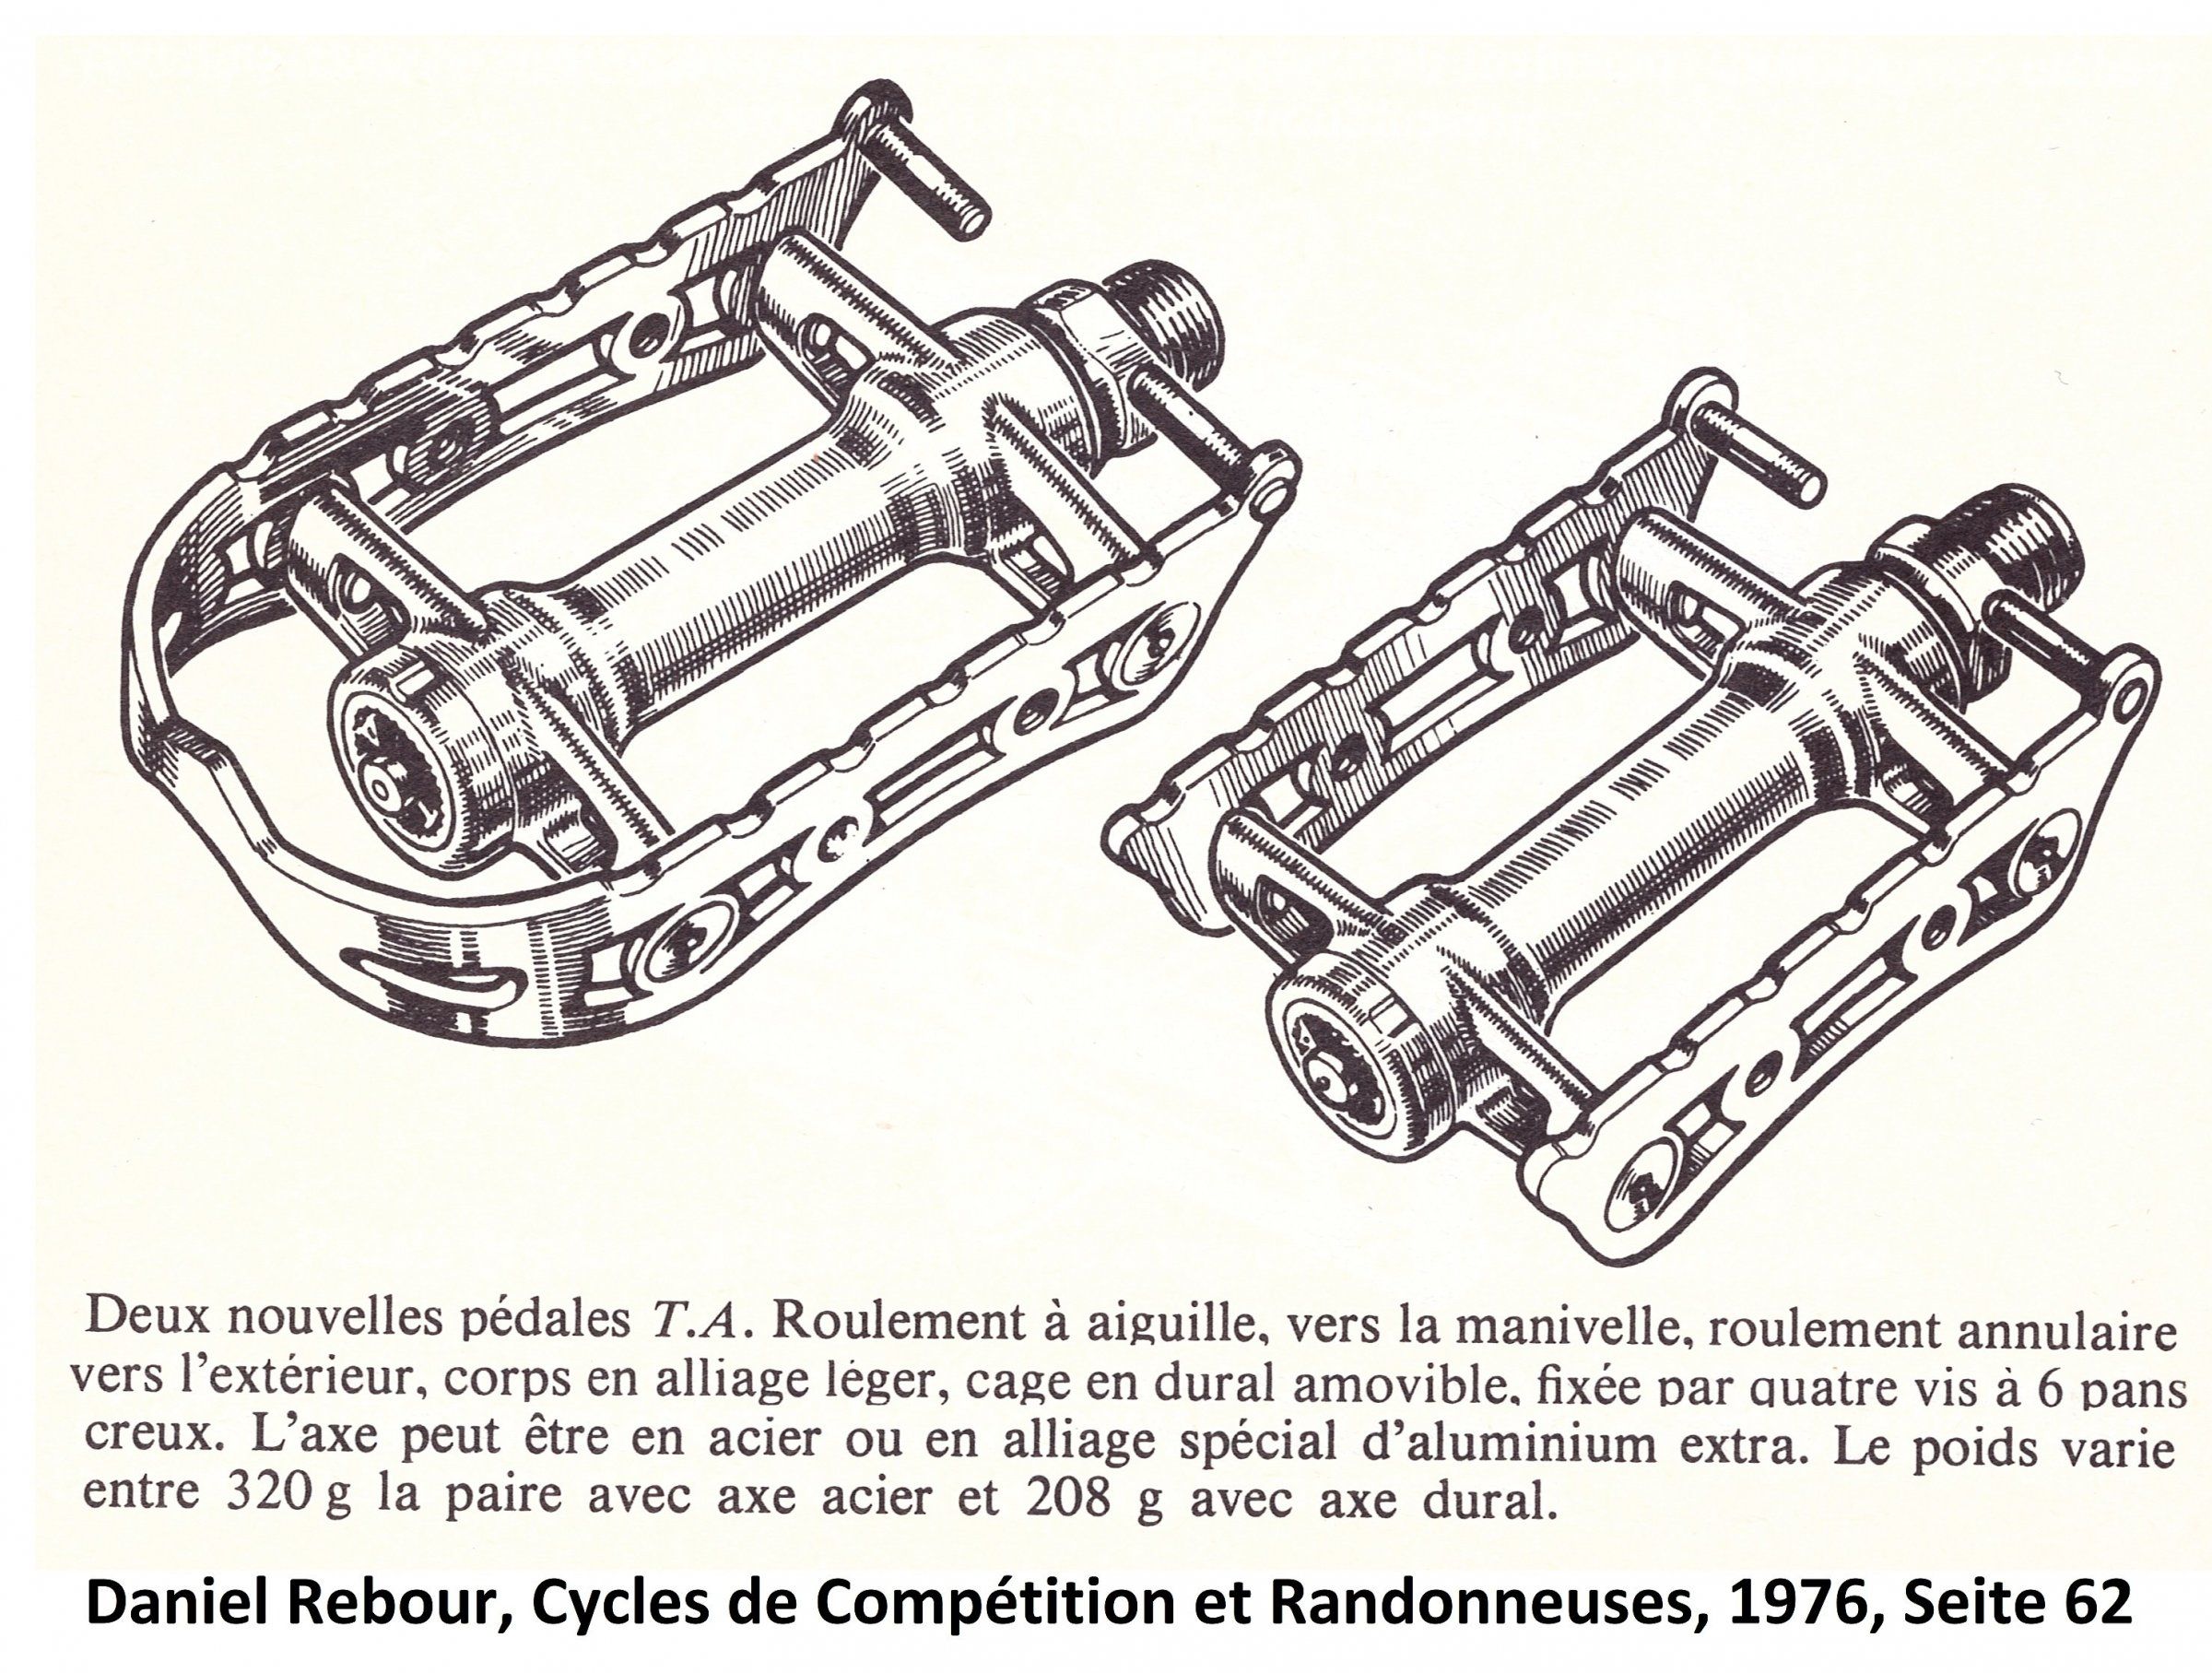 01, 1976, Daniel Rebour, Cycles de Compétition et Randonneuses, Seite 62 0,50.jpg